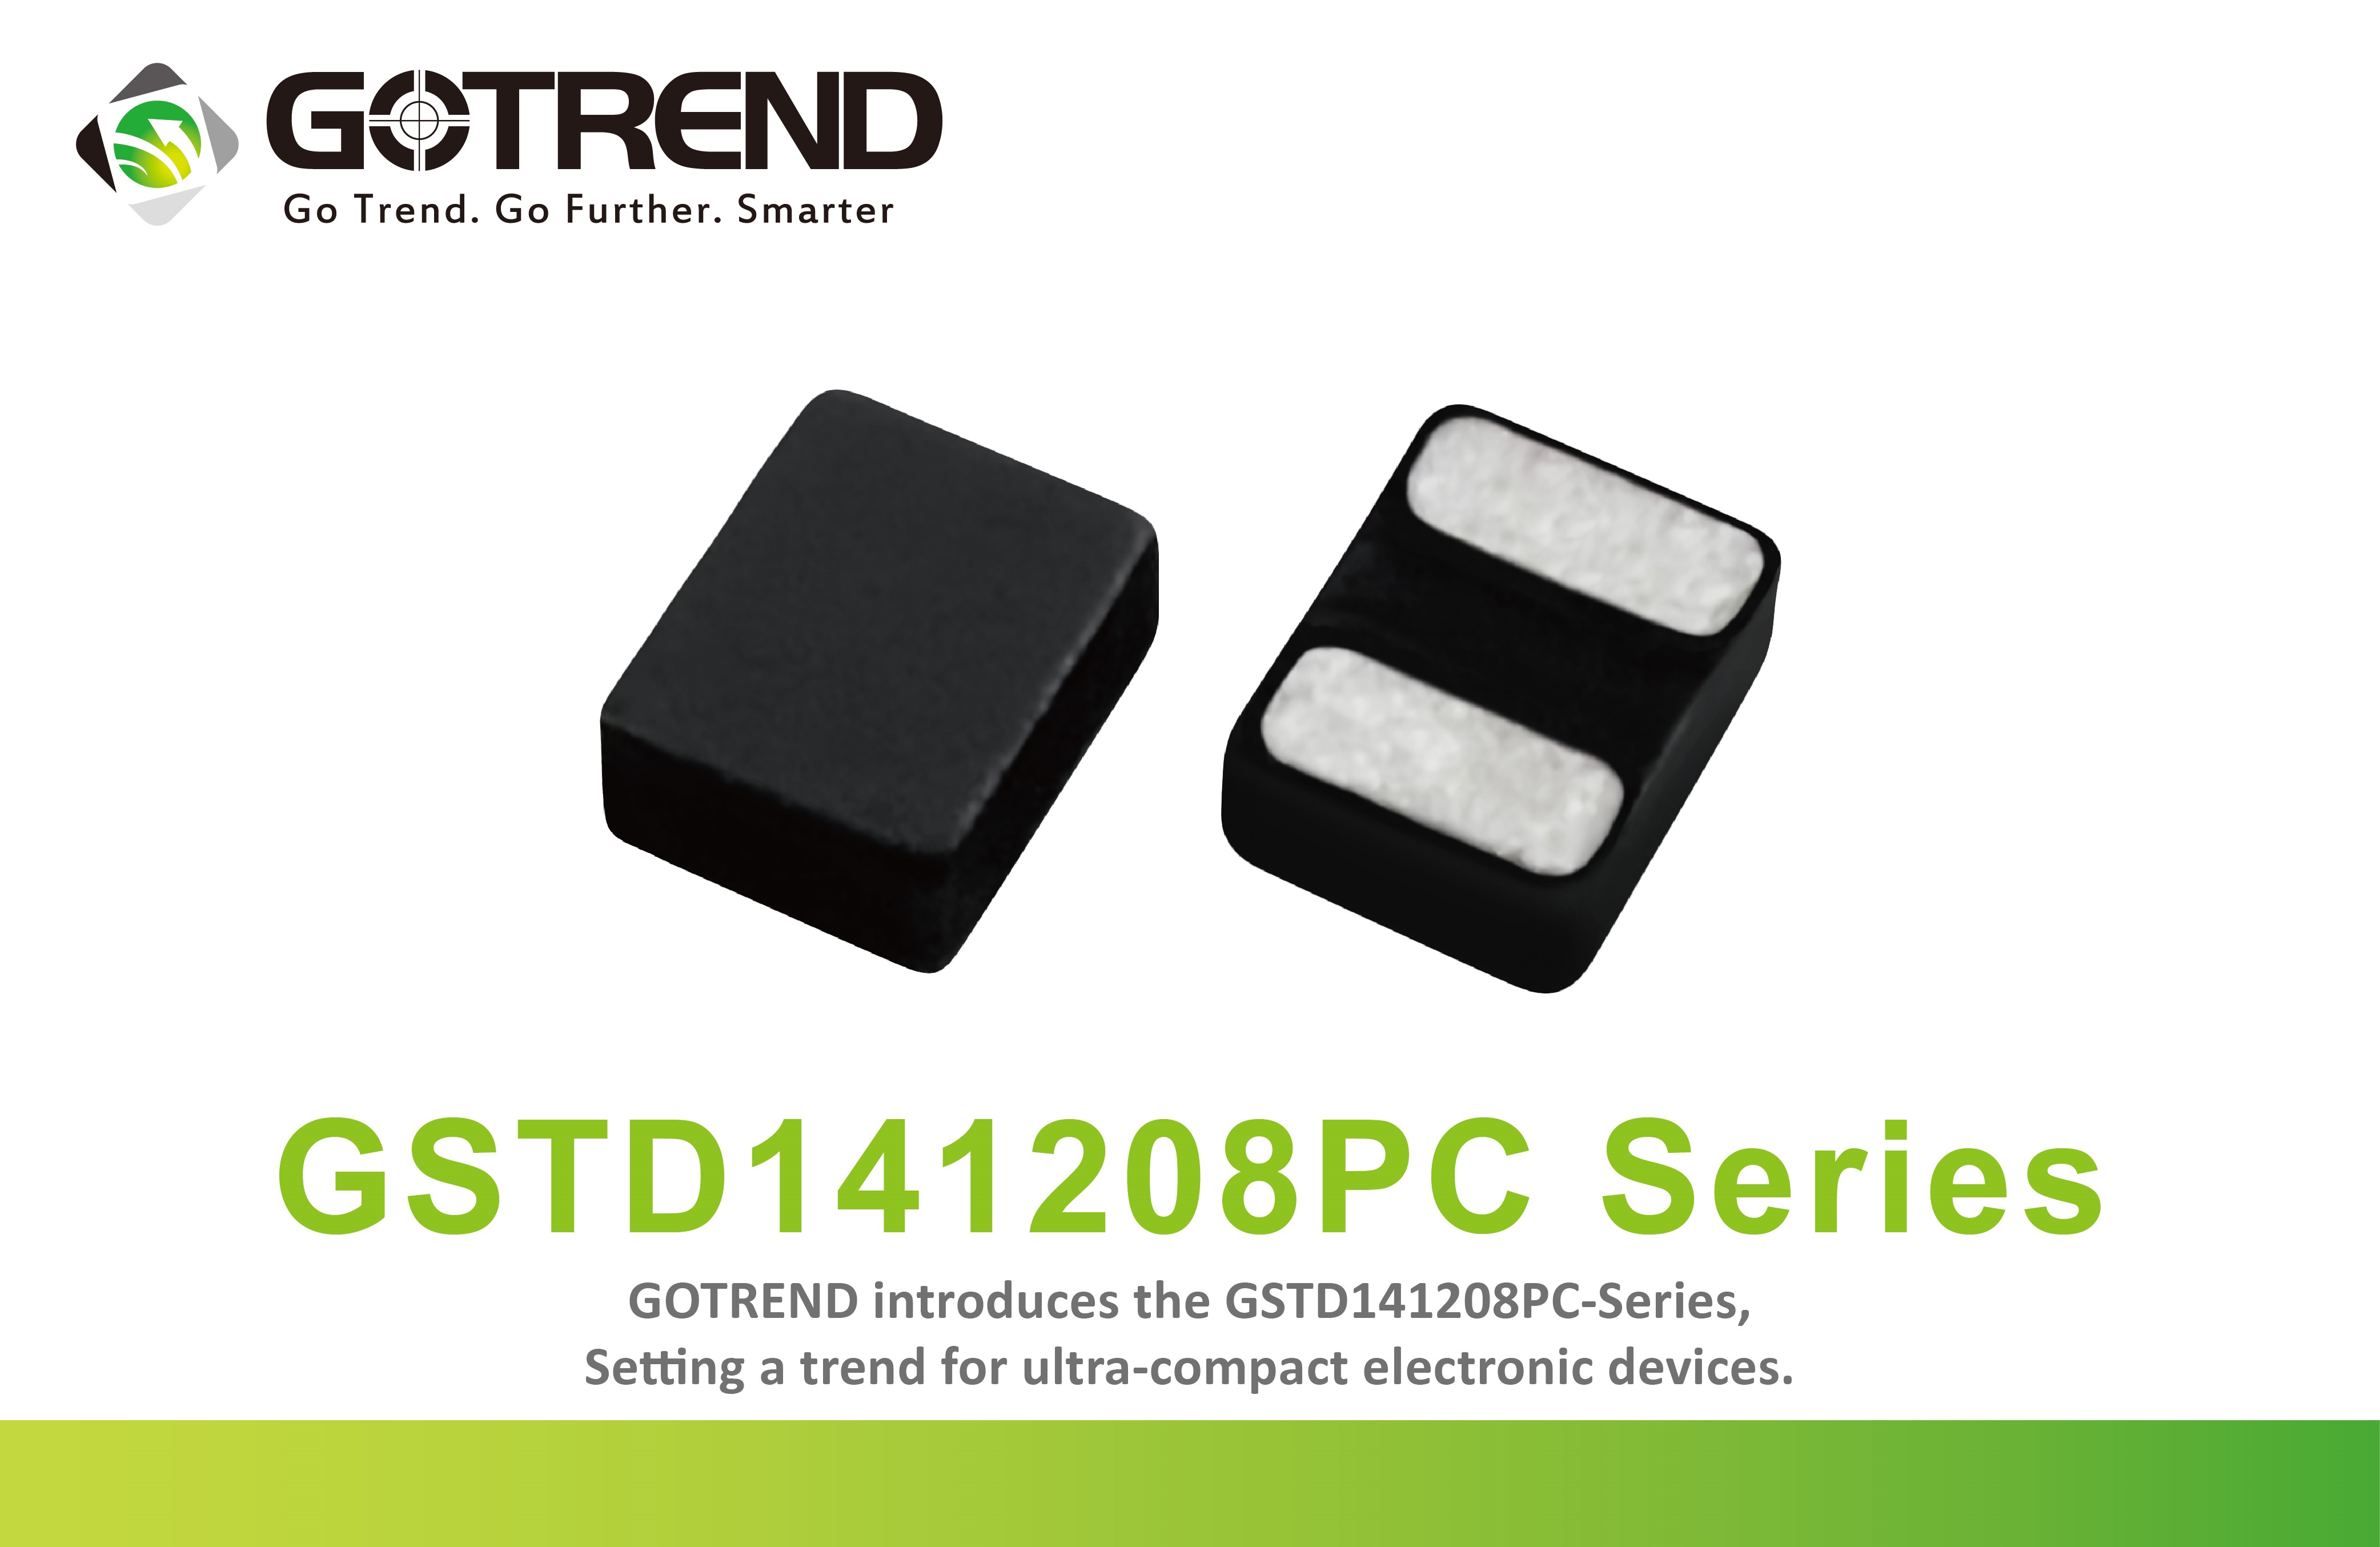 高創科技推出最小尺寸Molding系列產品GSTD141208PC-Series，引領電子小型裝置新潮流